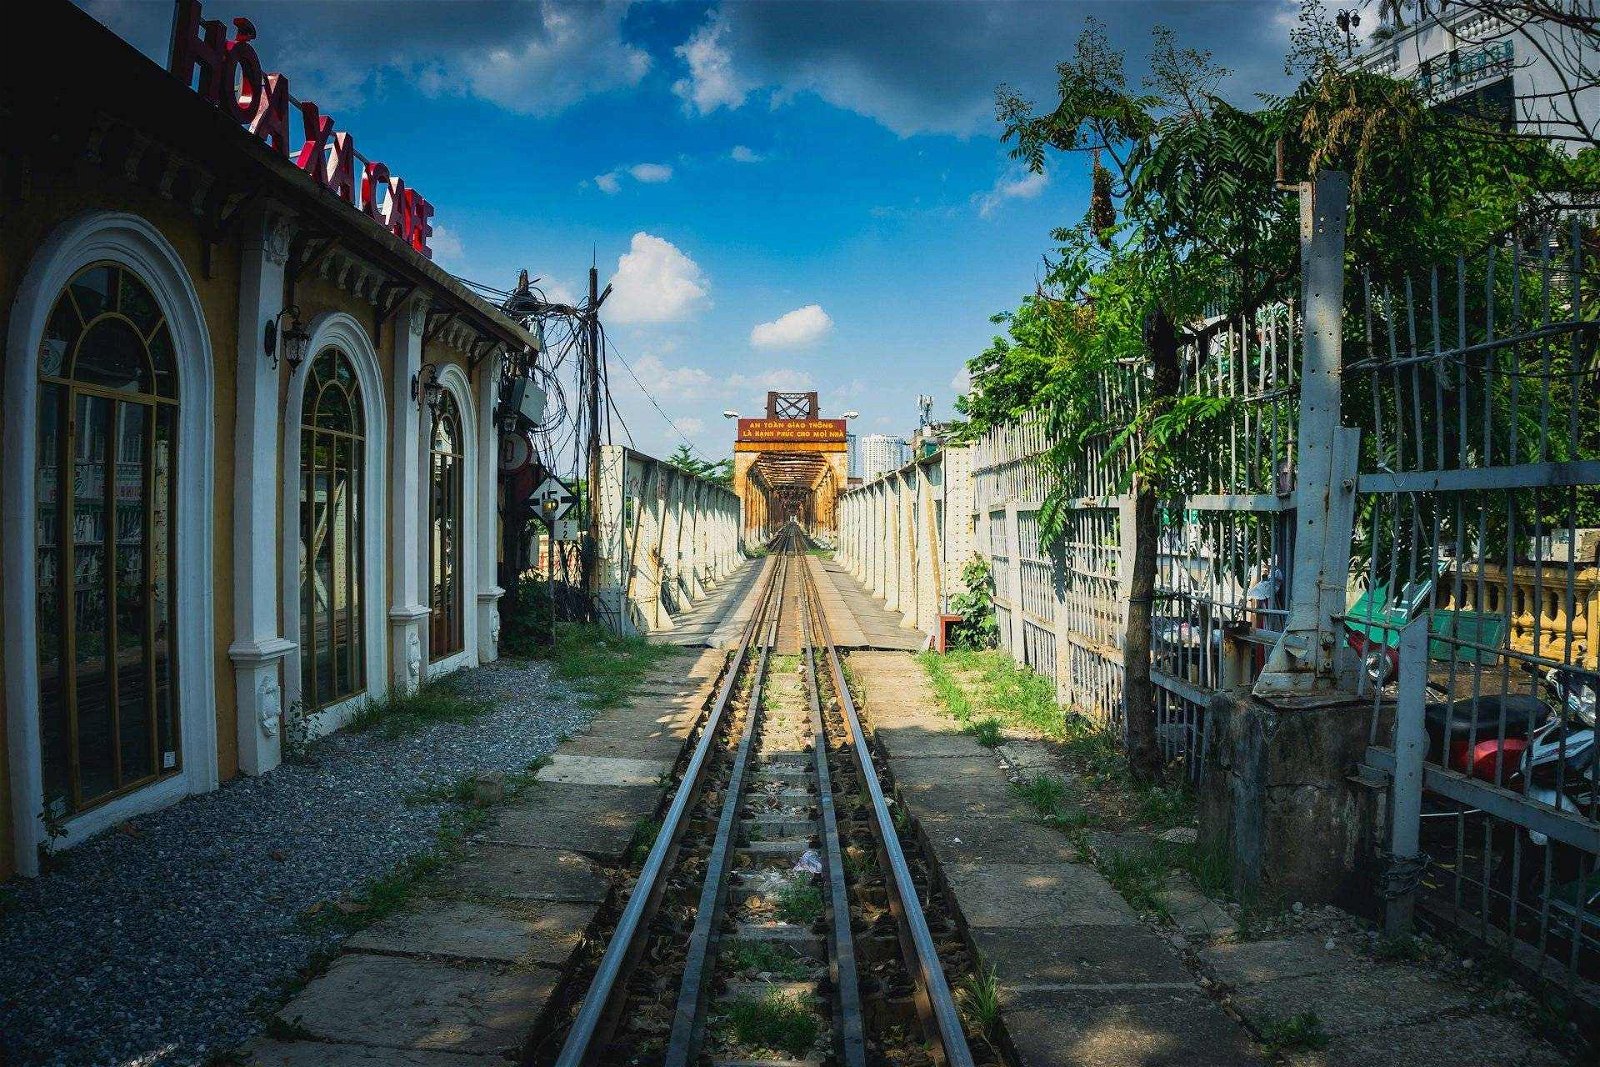 train around 1 - Central Vietnam